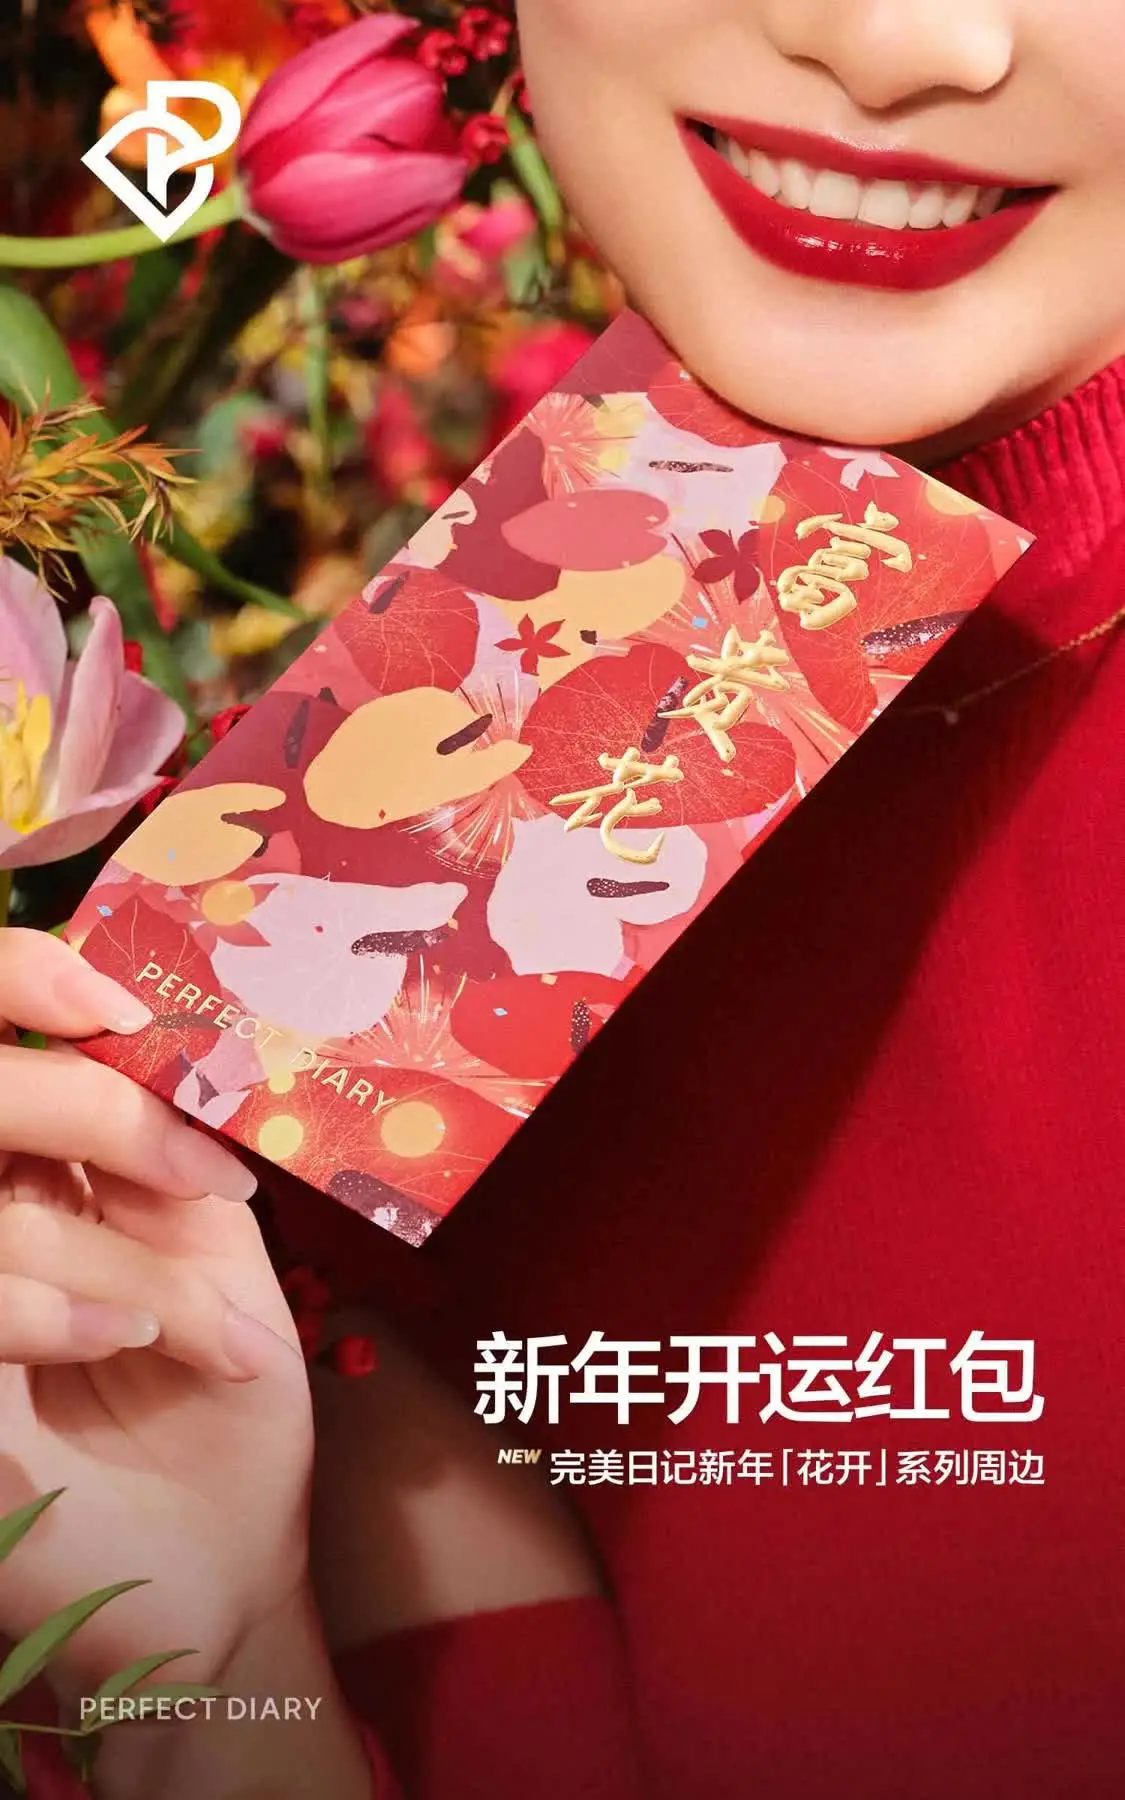 完美日记新年之际推出「花开」系列 打造喜气十足的新年开运妆